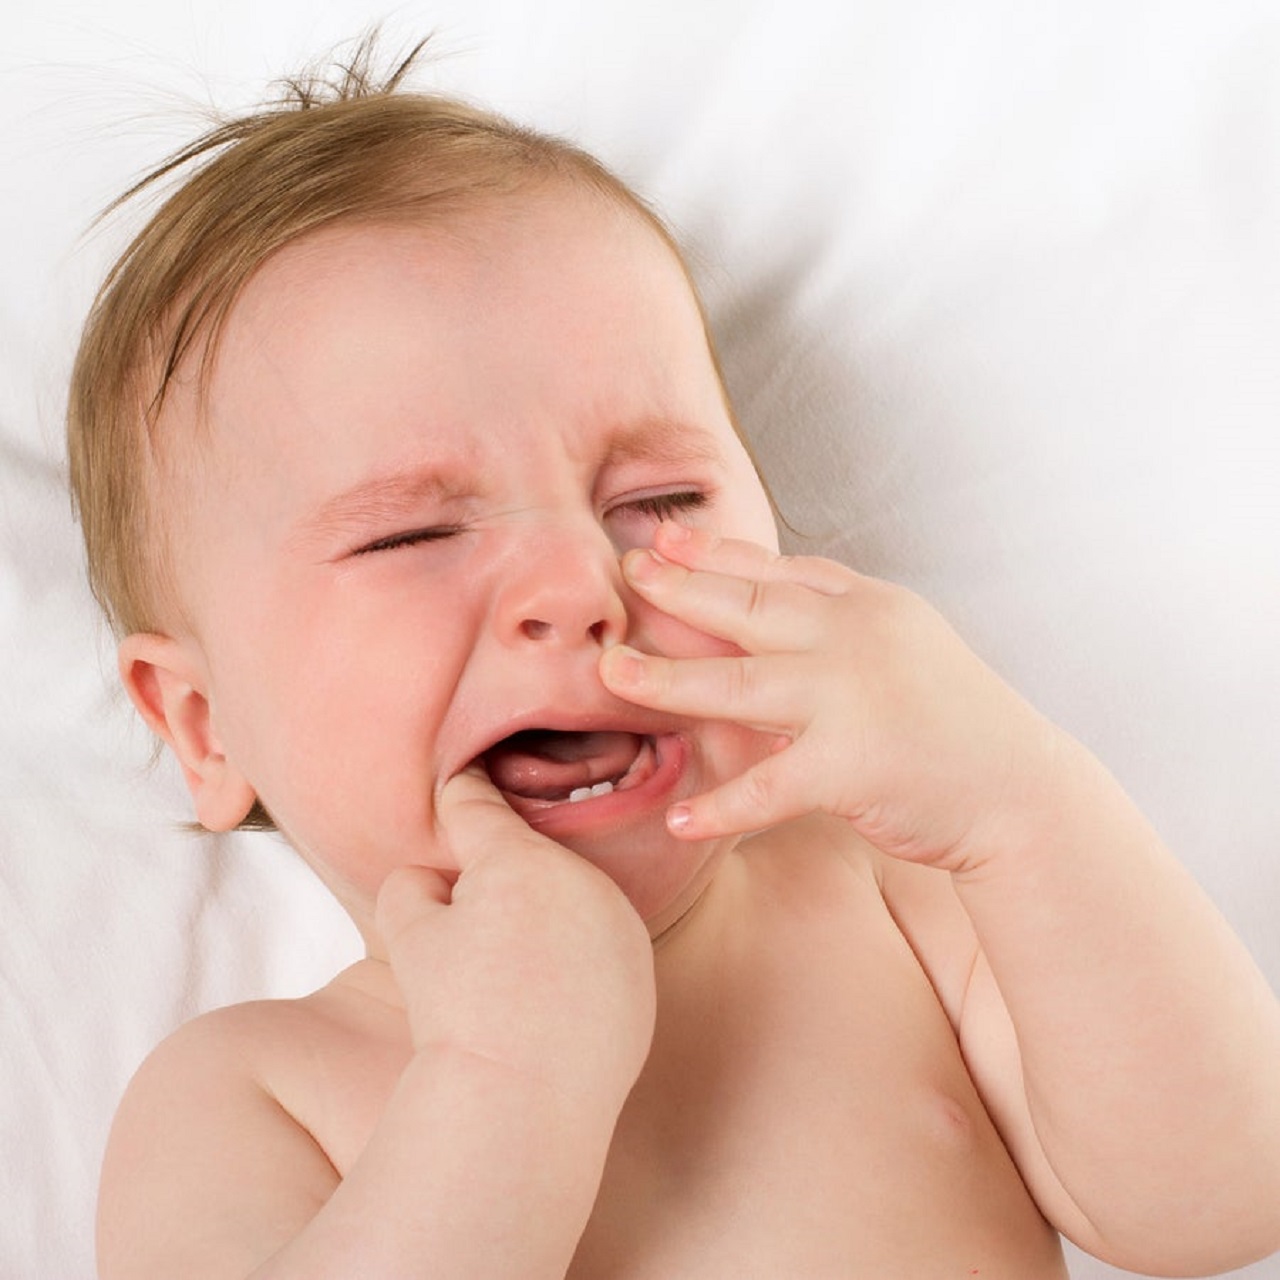 Điều gì sẽ xảy ra nếu không chăm sóc cho trẻ khi mọc răng đau?
